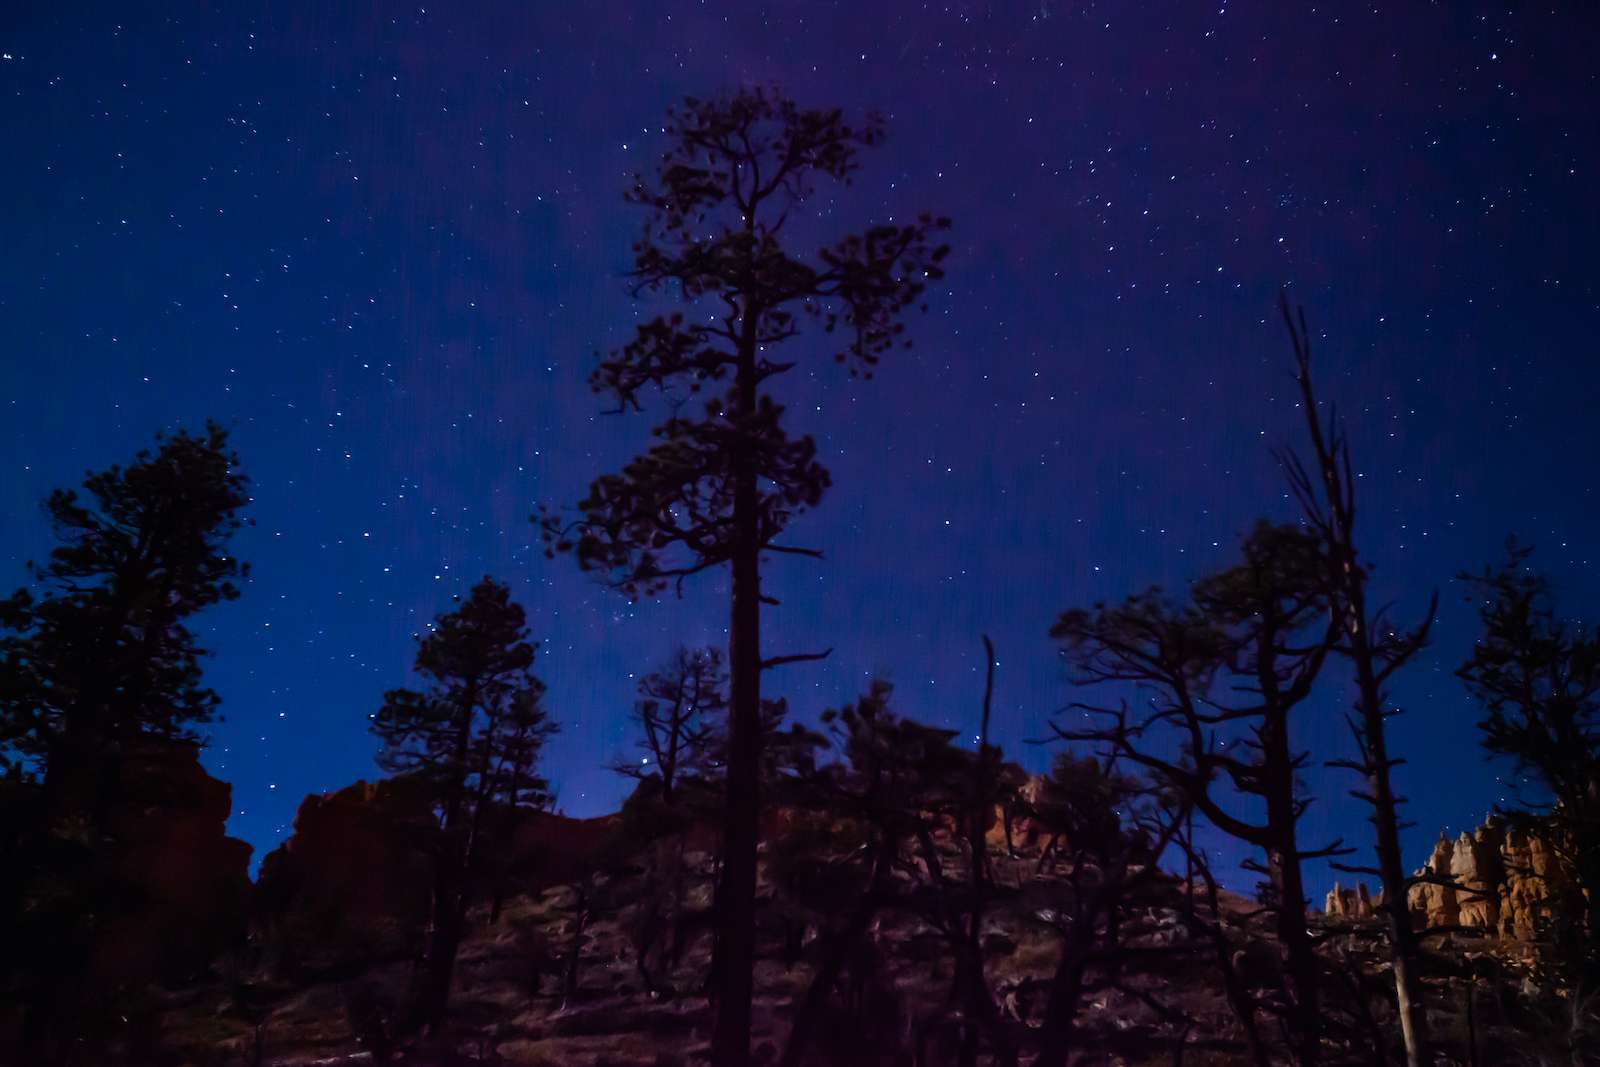 Stargazing Night Sky at Fairyland Loop at Bryce Canyon National Park